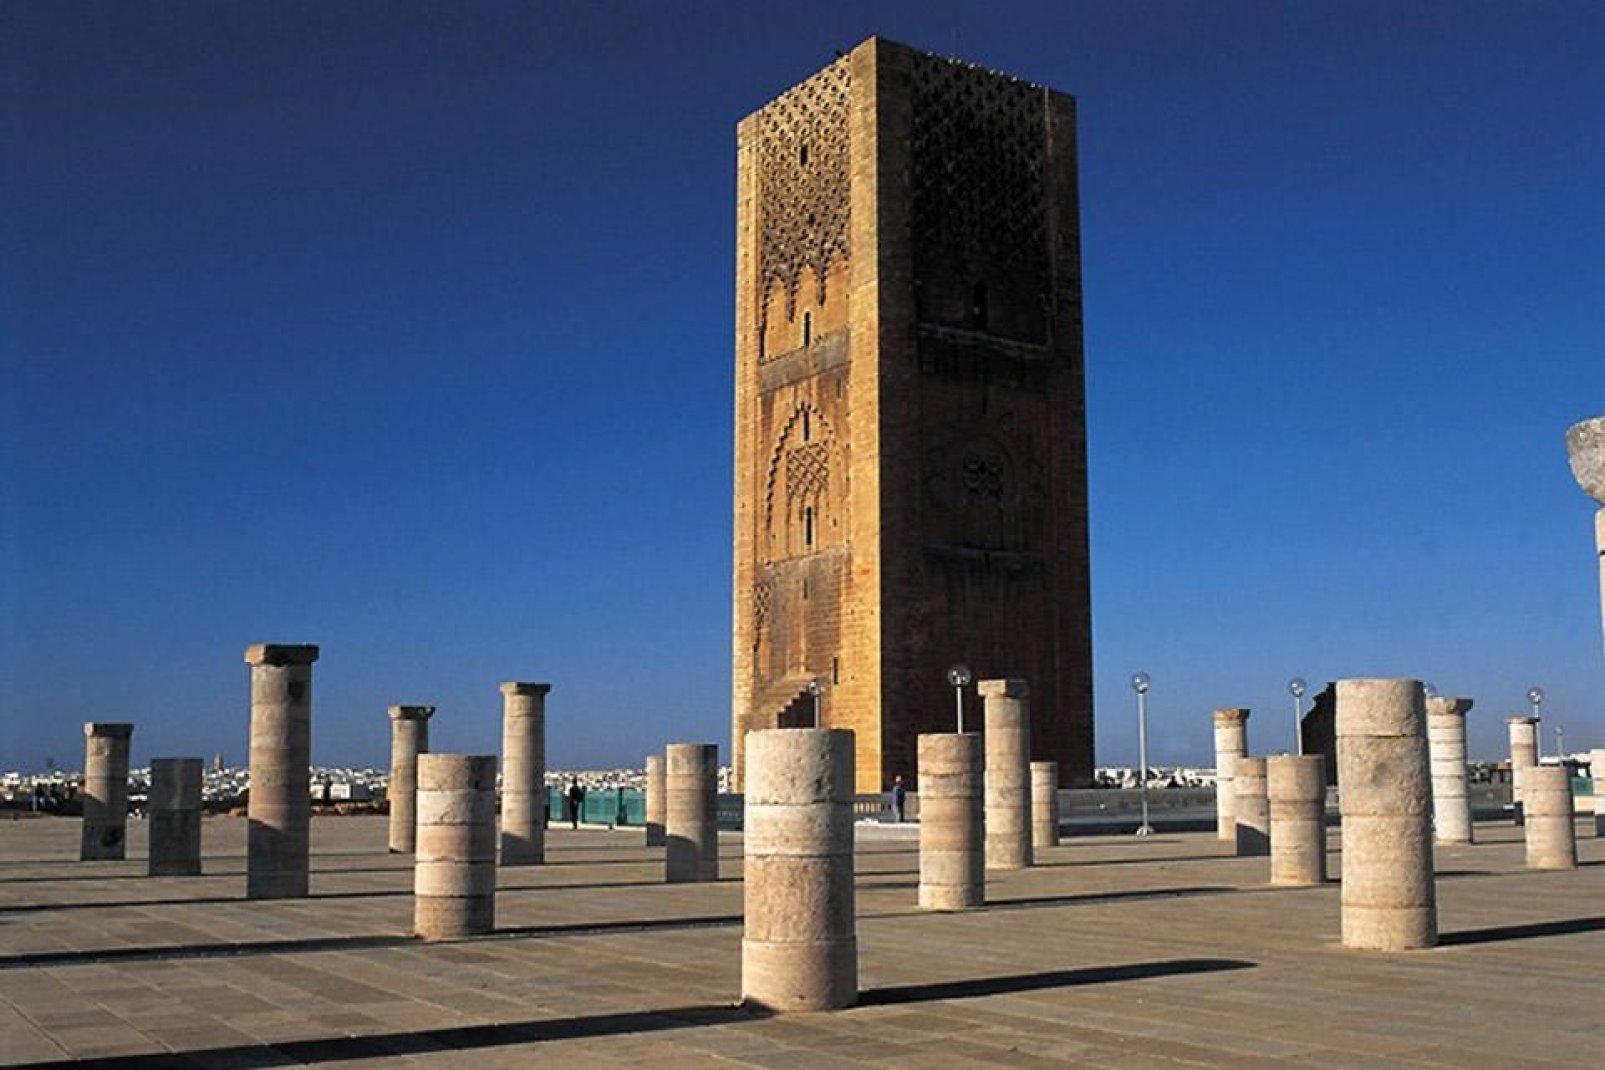 Der Hassan-Turm gilt weiterhin als eines der wichtigsten Monumente von Rabat. Hier sollte eigentlich die größte Moschee der Welt errichtet werden, deren Bauarbeiten allerdings nie abgeschlossen wurden.